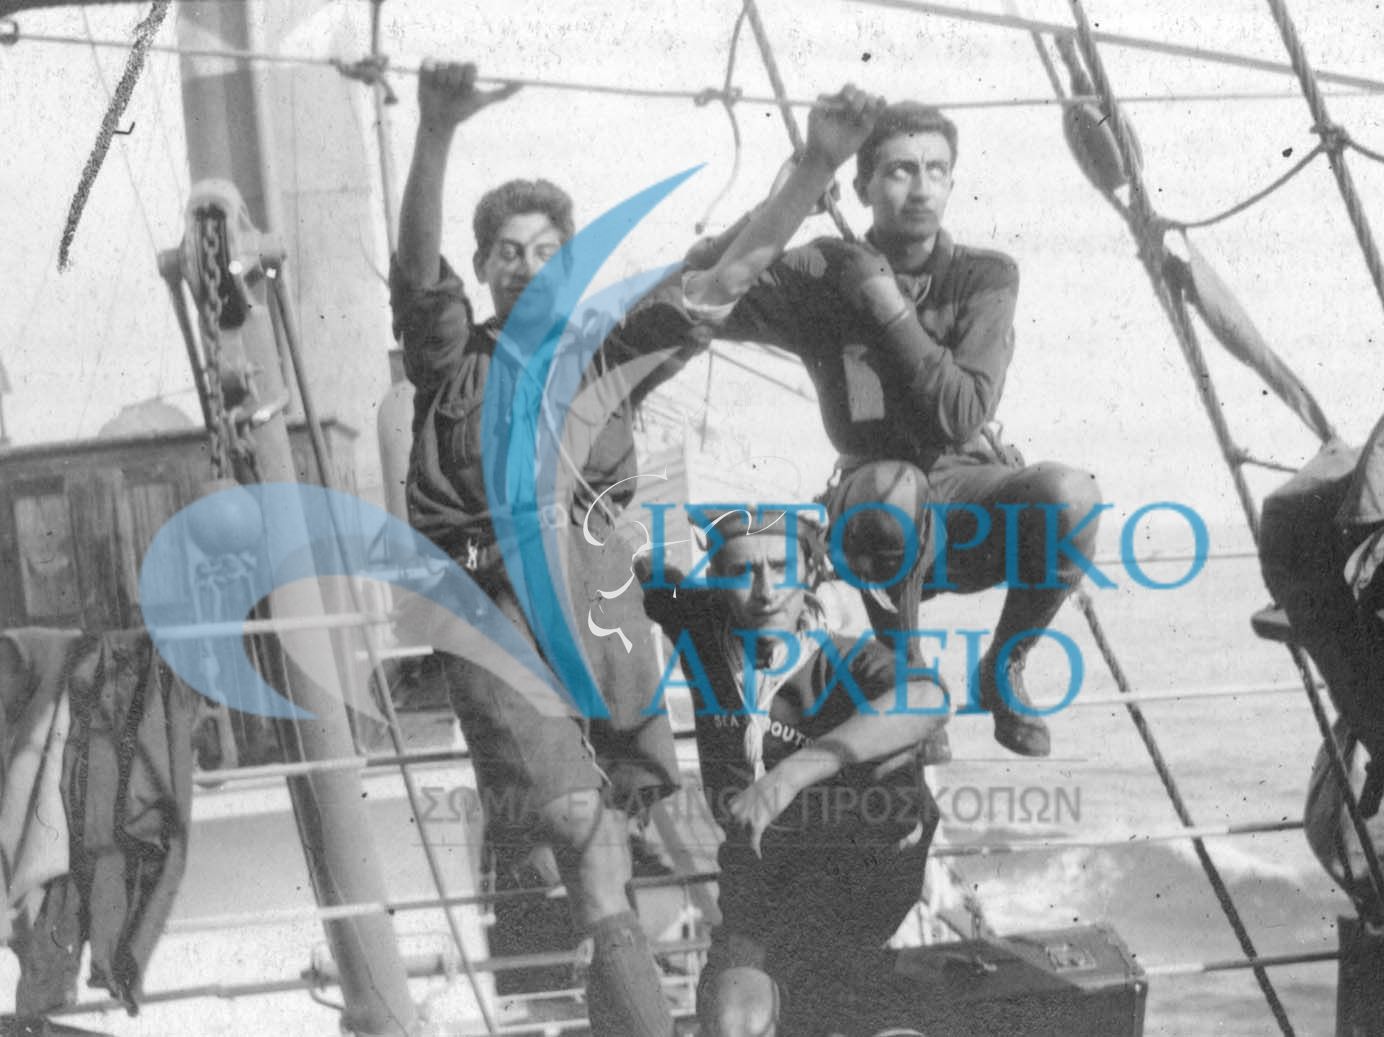 Η Έλληνική συμμετοχή στο πρώτο Παγκόσμιο Τζάμπορη το 1920  .Στο πλοίο για Μασαλία